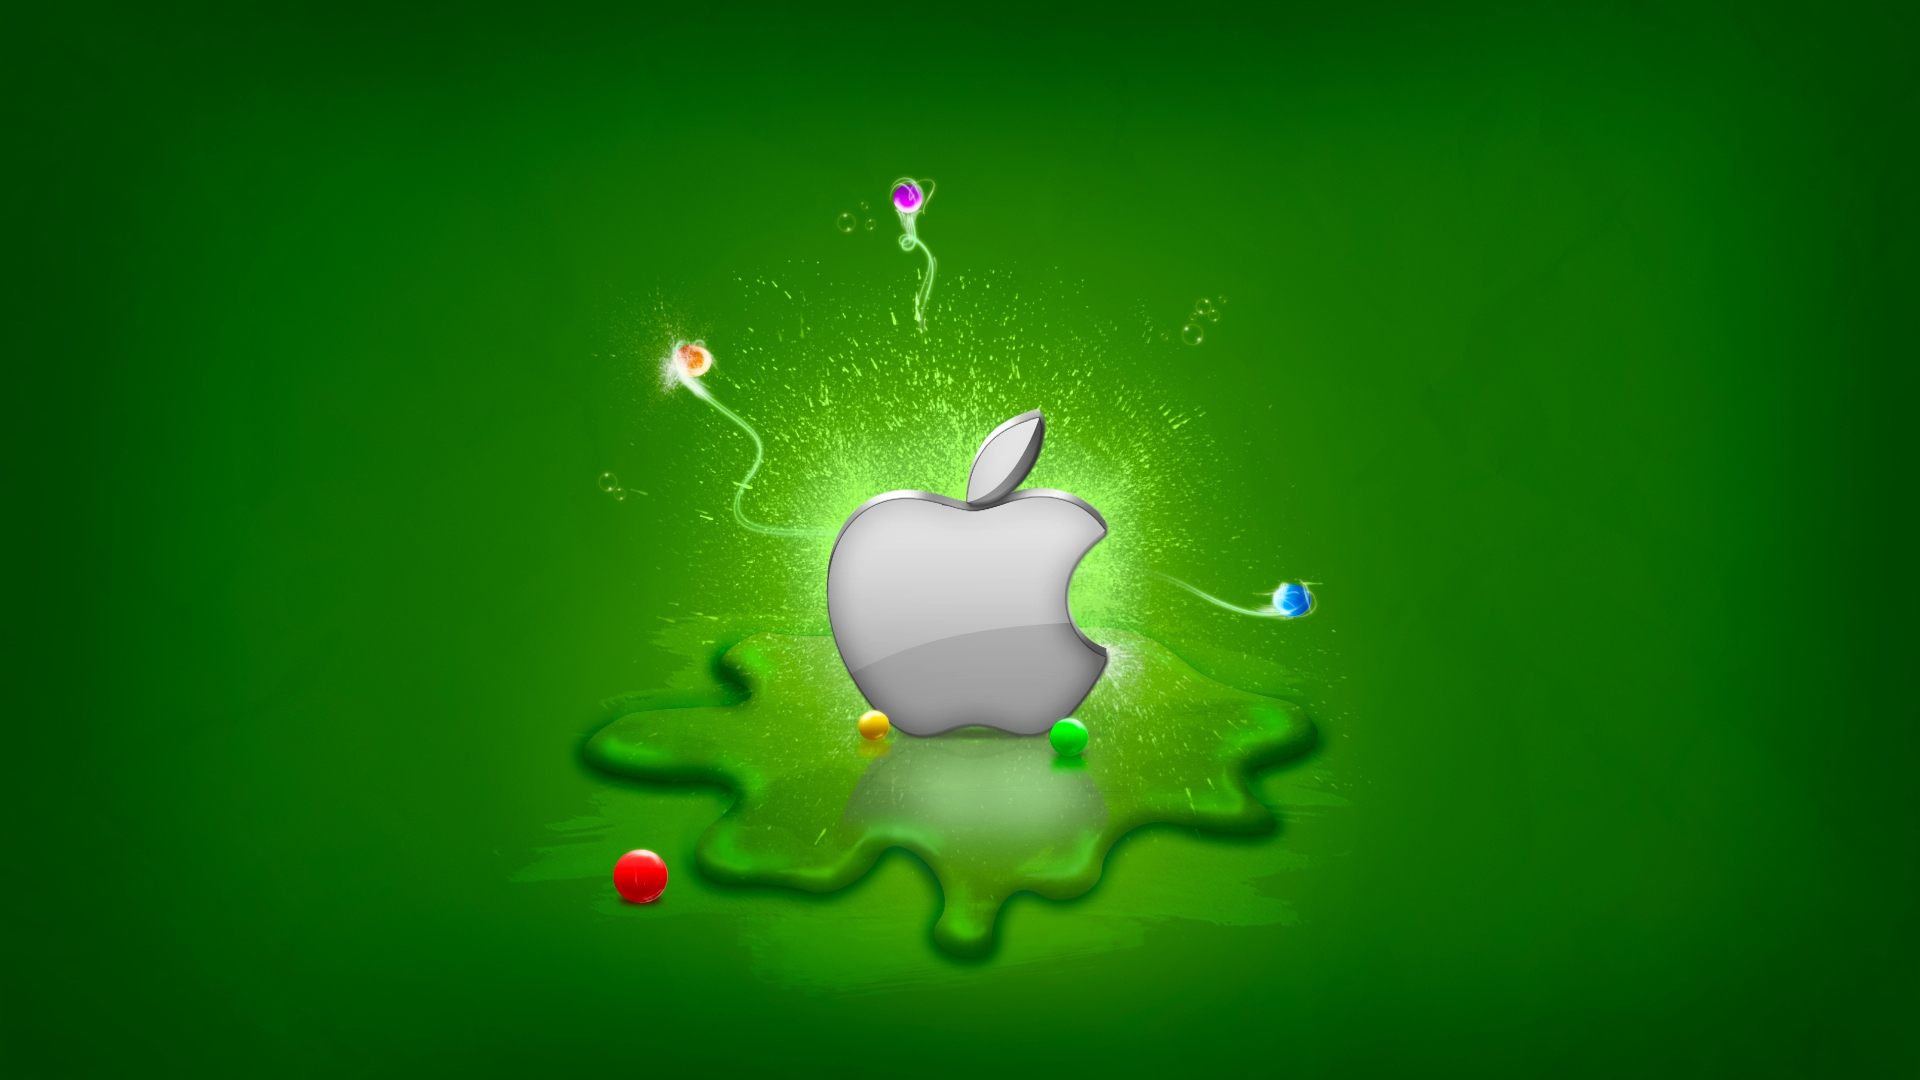 apple logo wallpaper hd,grün,wasser,licht,illustration,blatt